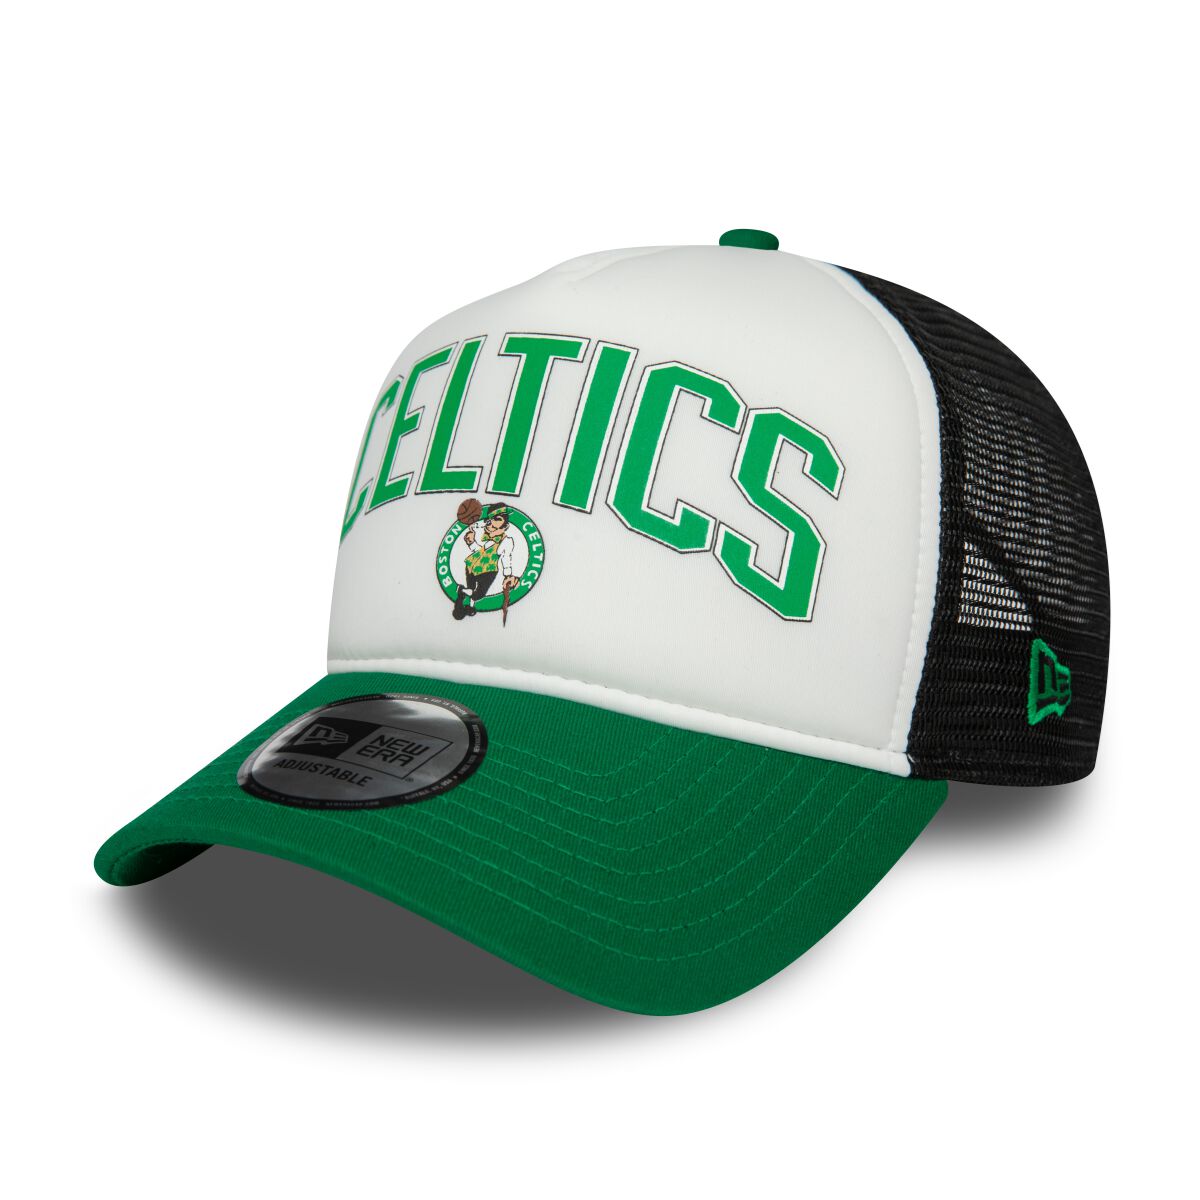 New Era - NBA - Retro Trucker 9FORTY - Boston Celtics - Cap - multicolor